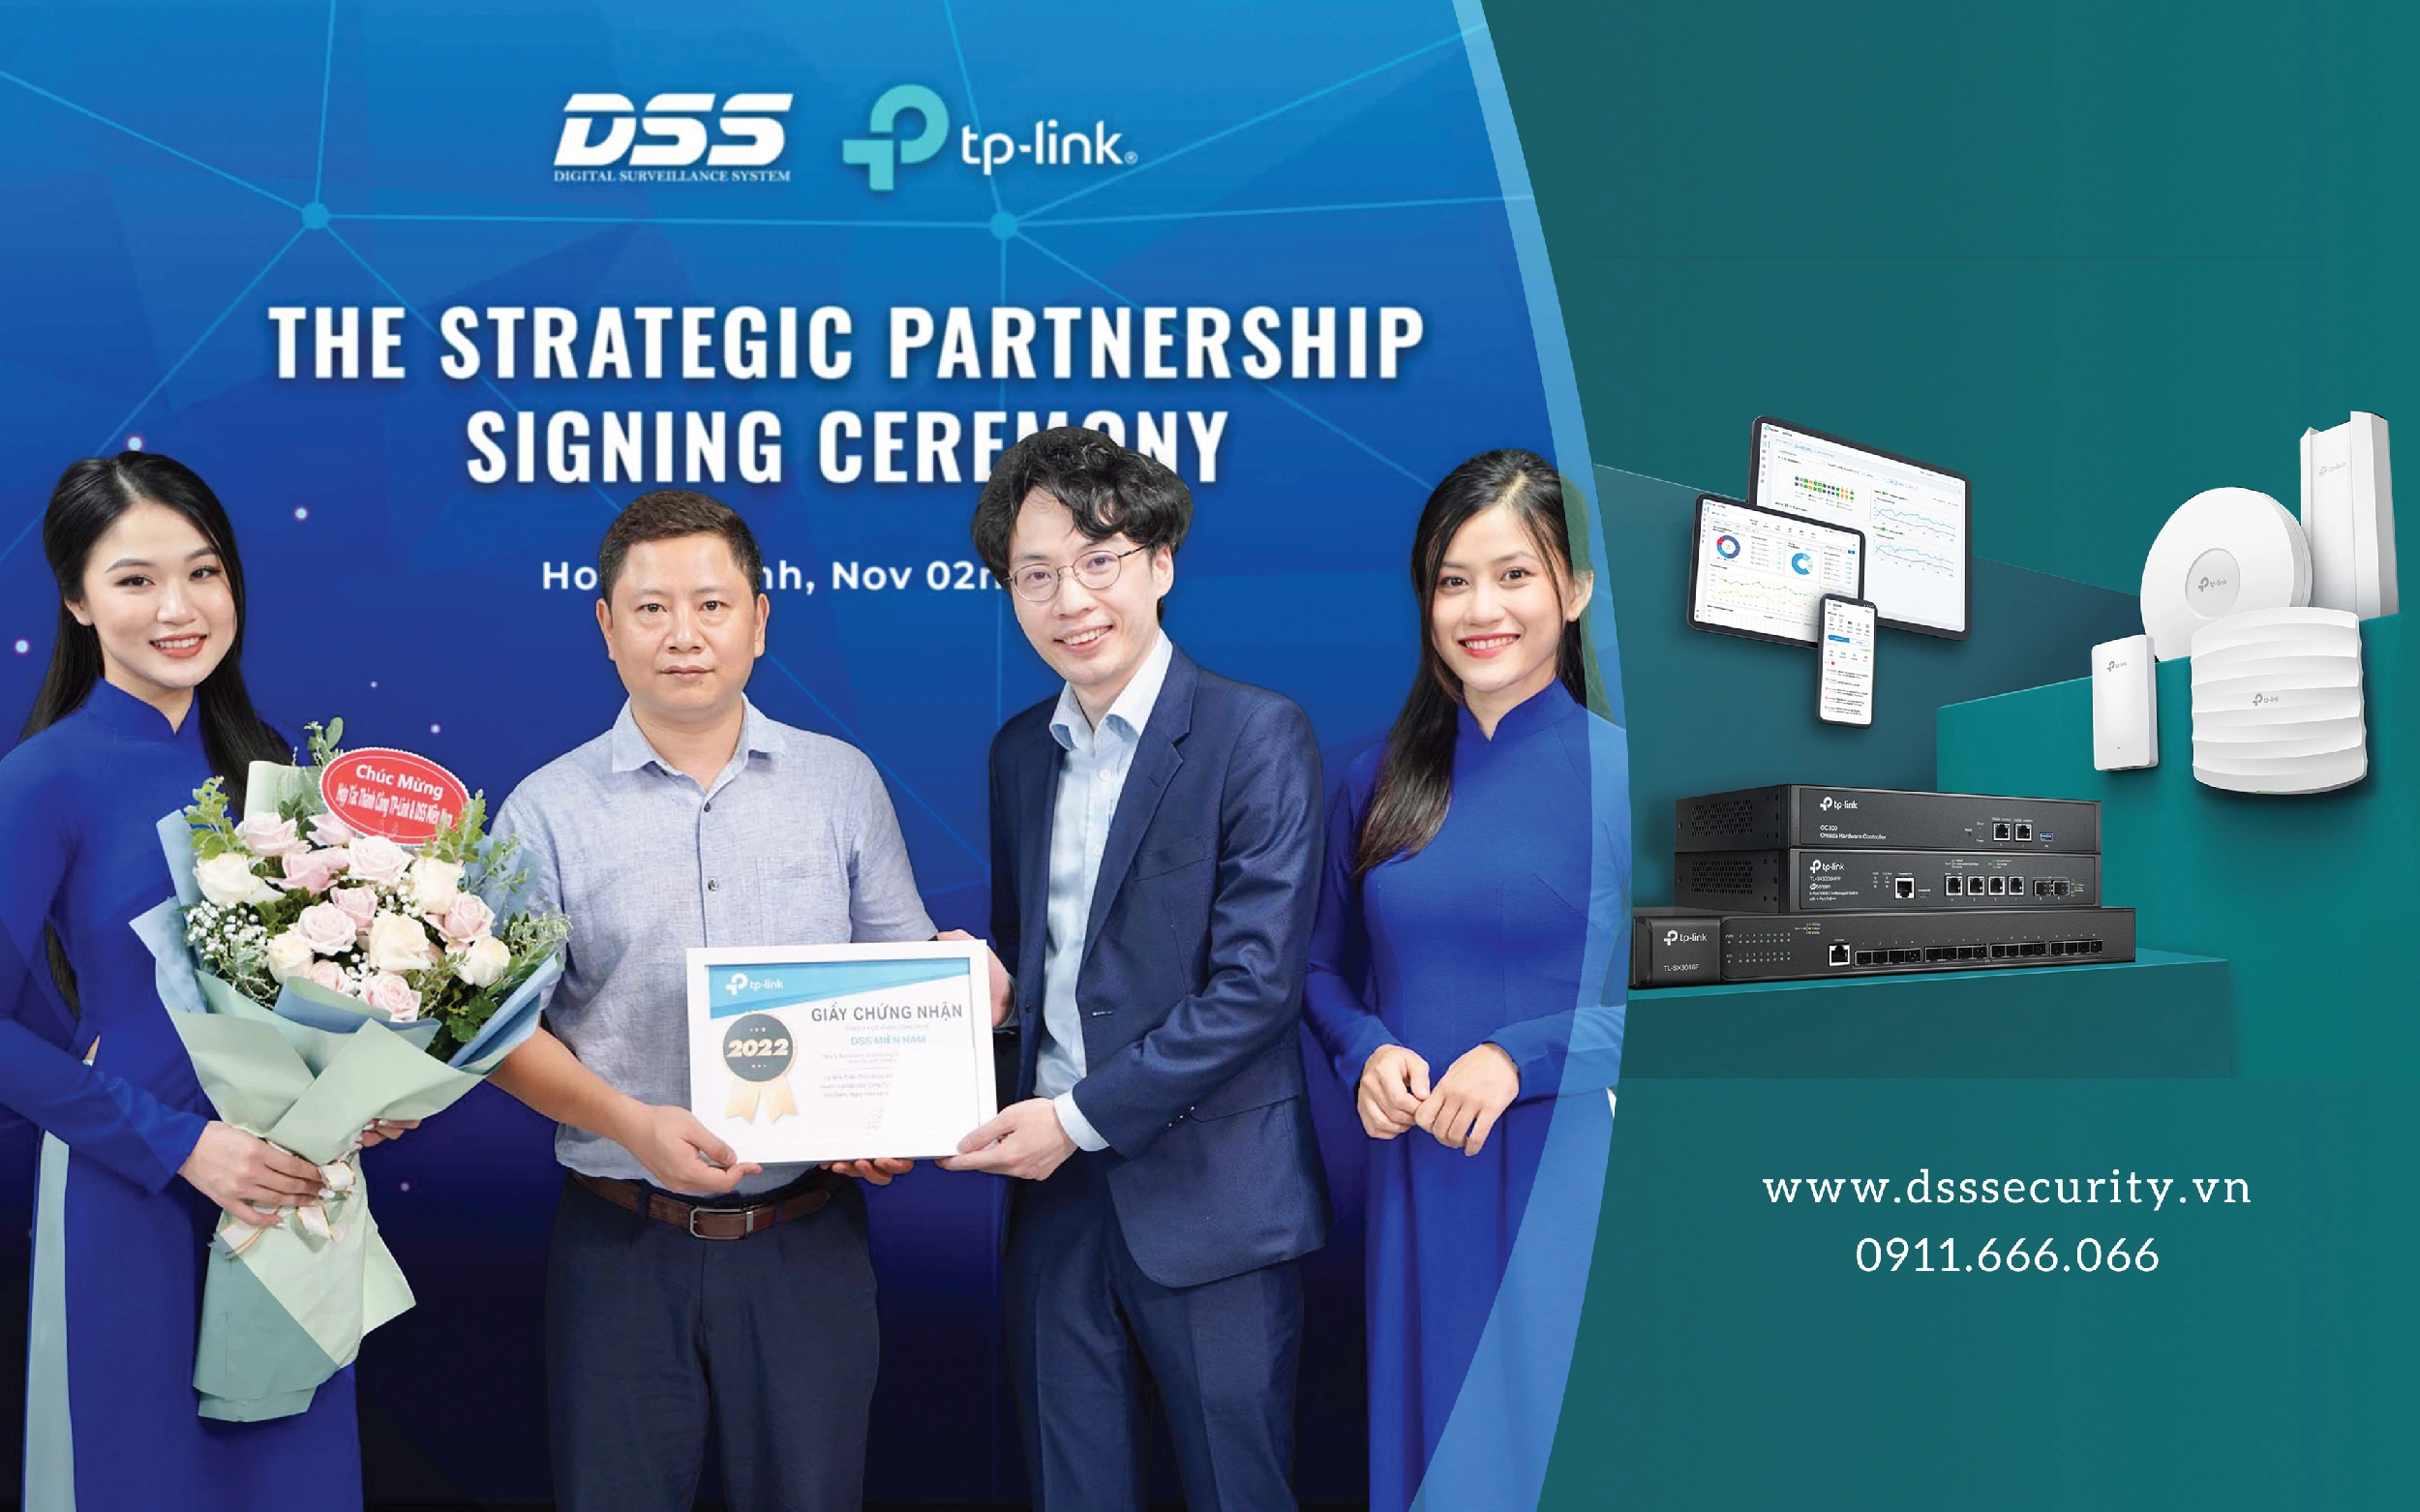 DSS Miền Nam trở thành nhà phân phối thiết bị mạng chính hãng TP-Link